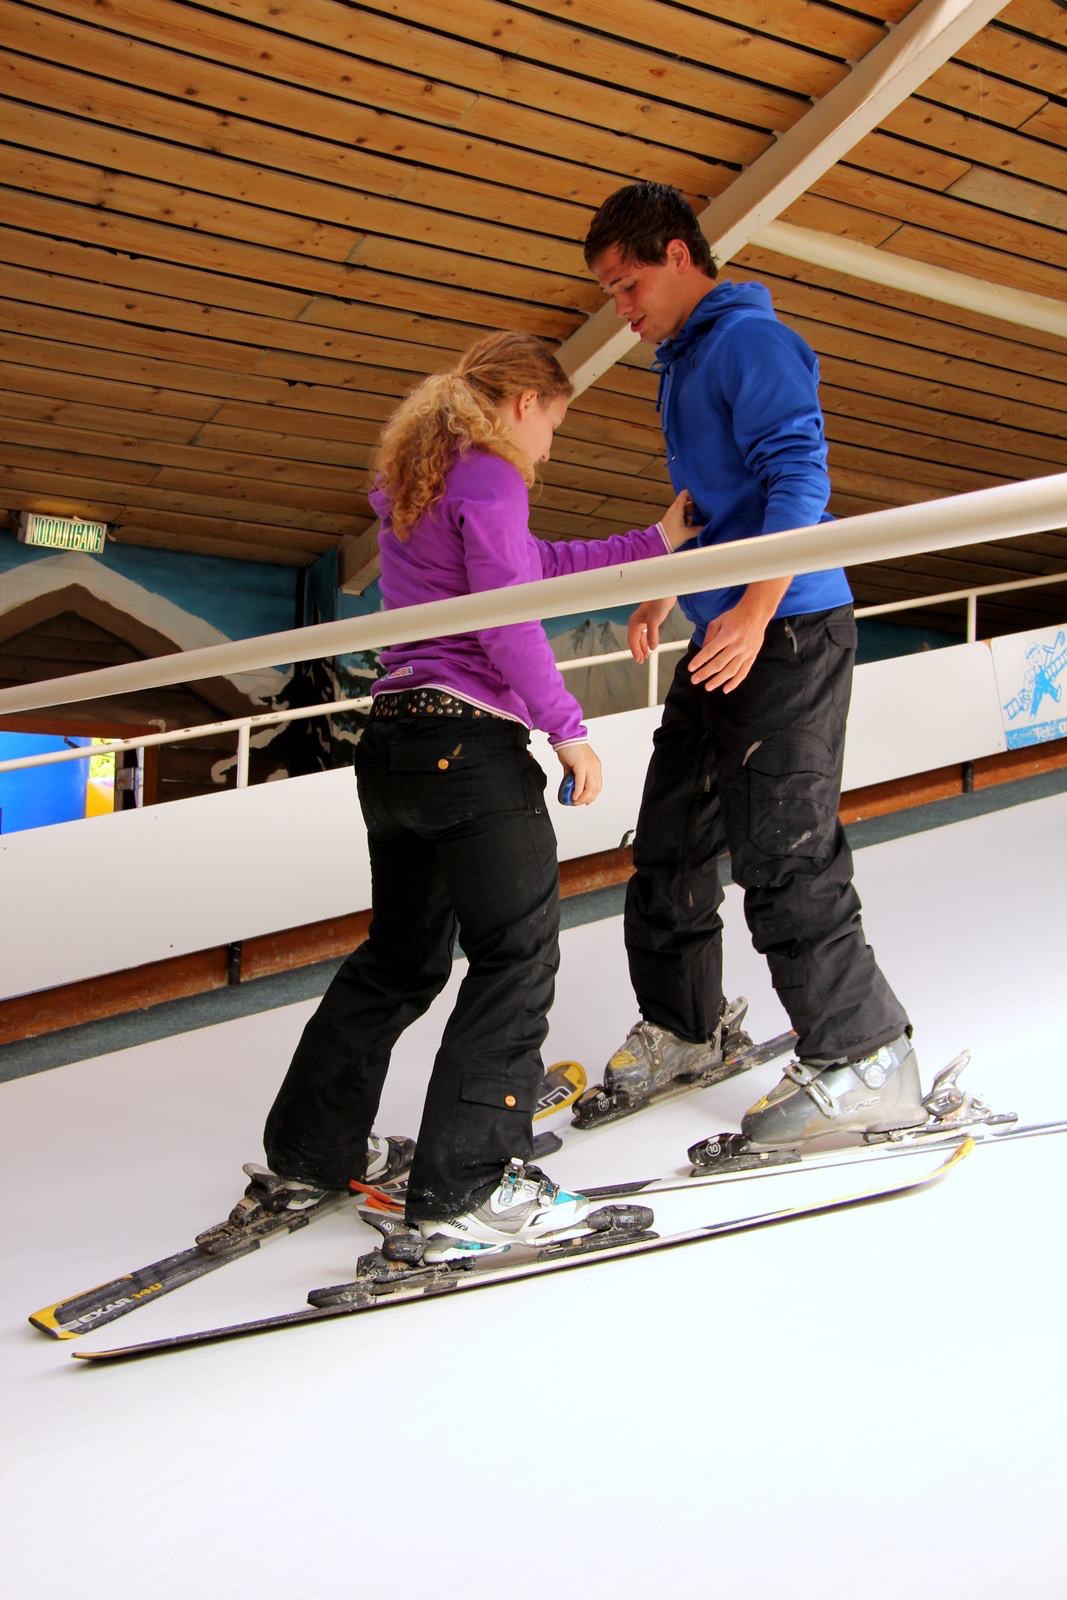 Leraar van SkiDiscovery geeft les op rollerbaan